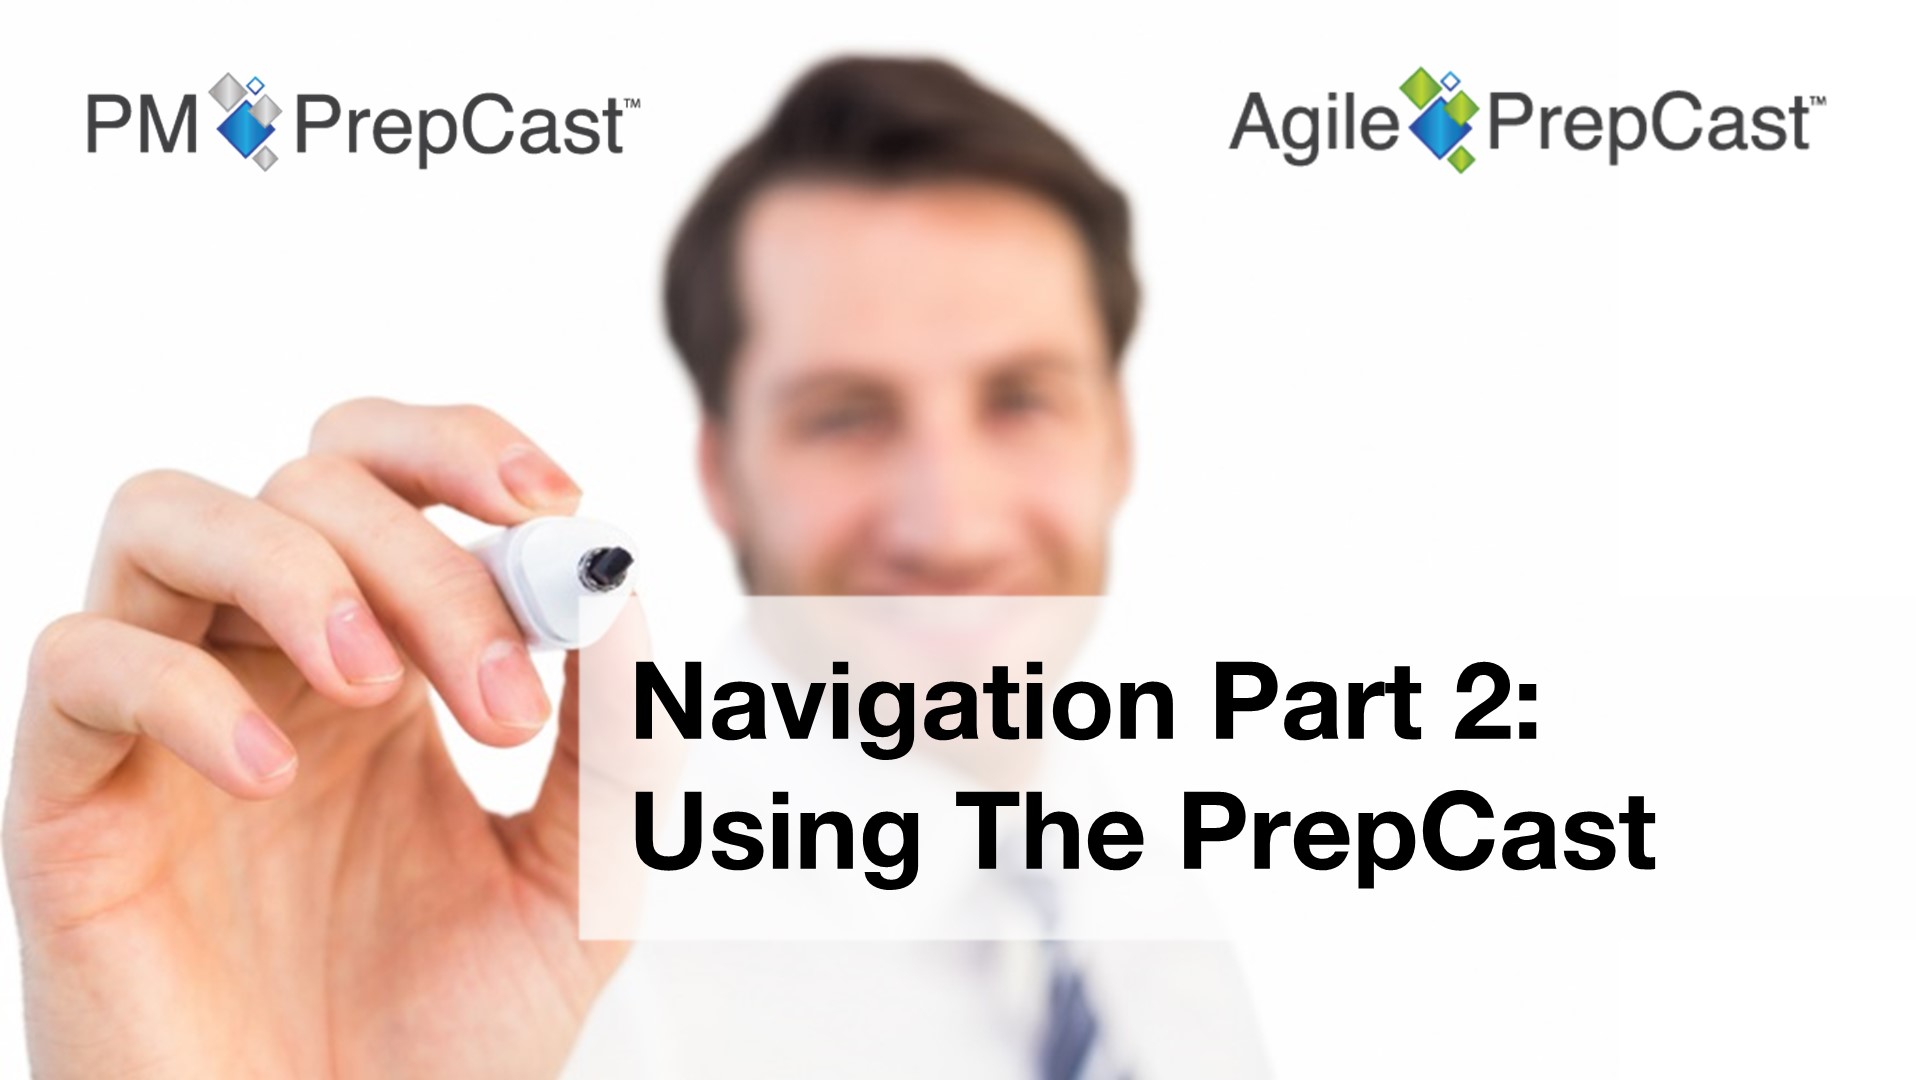 Navigation Part 2: Using The PrepCast